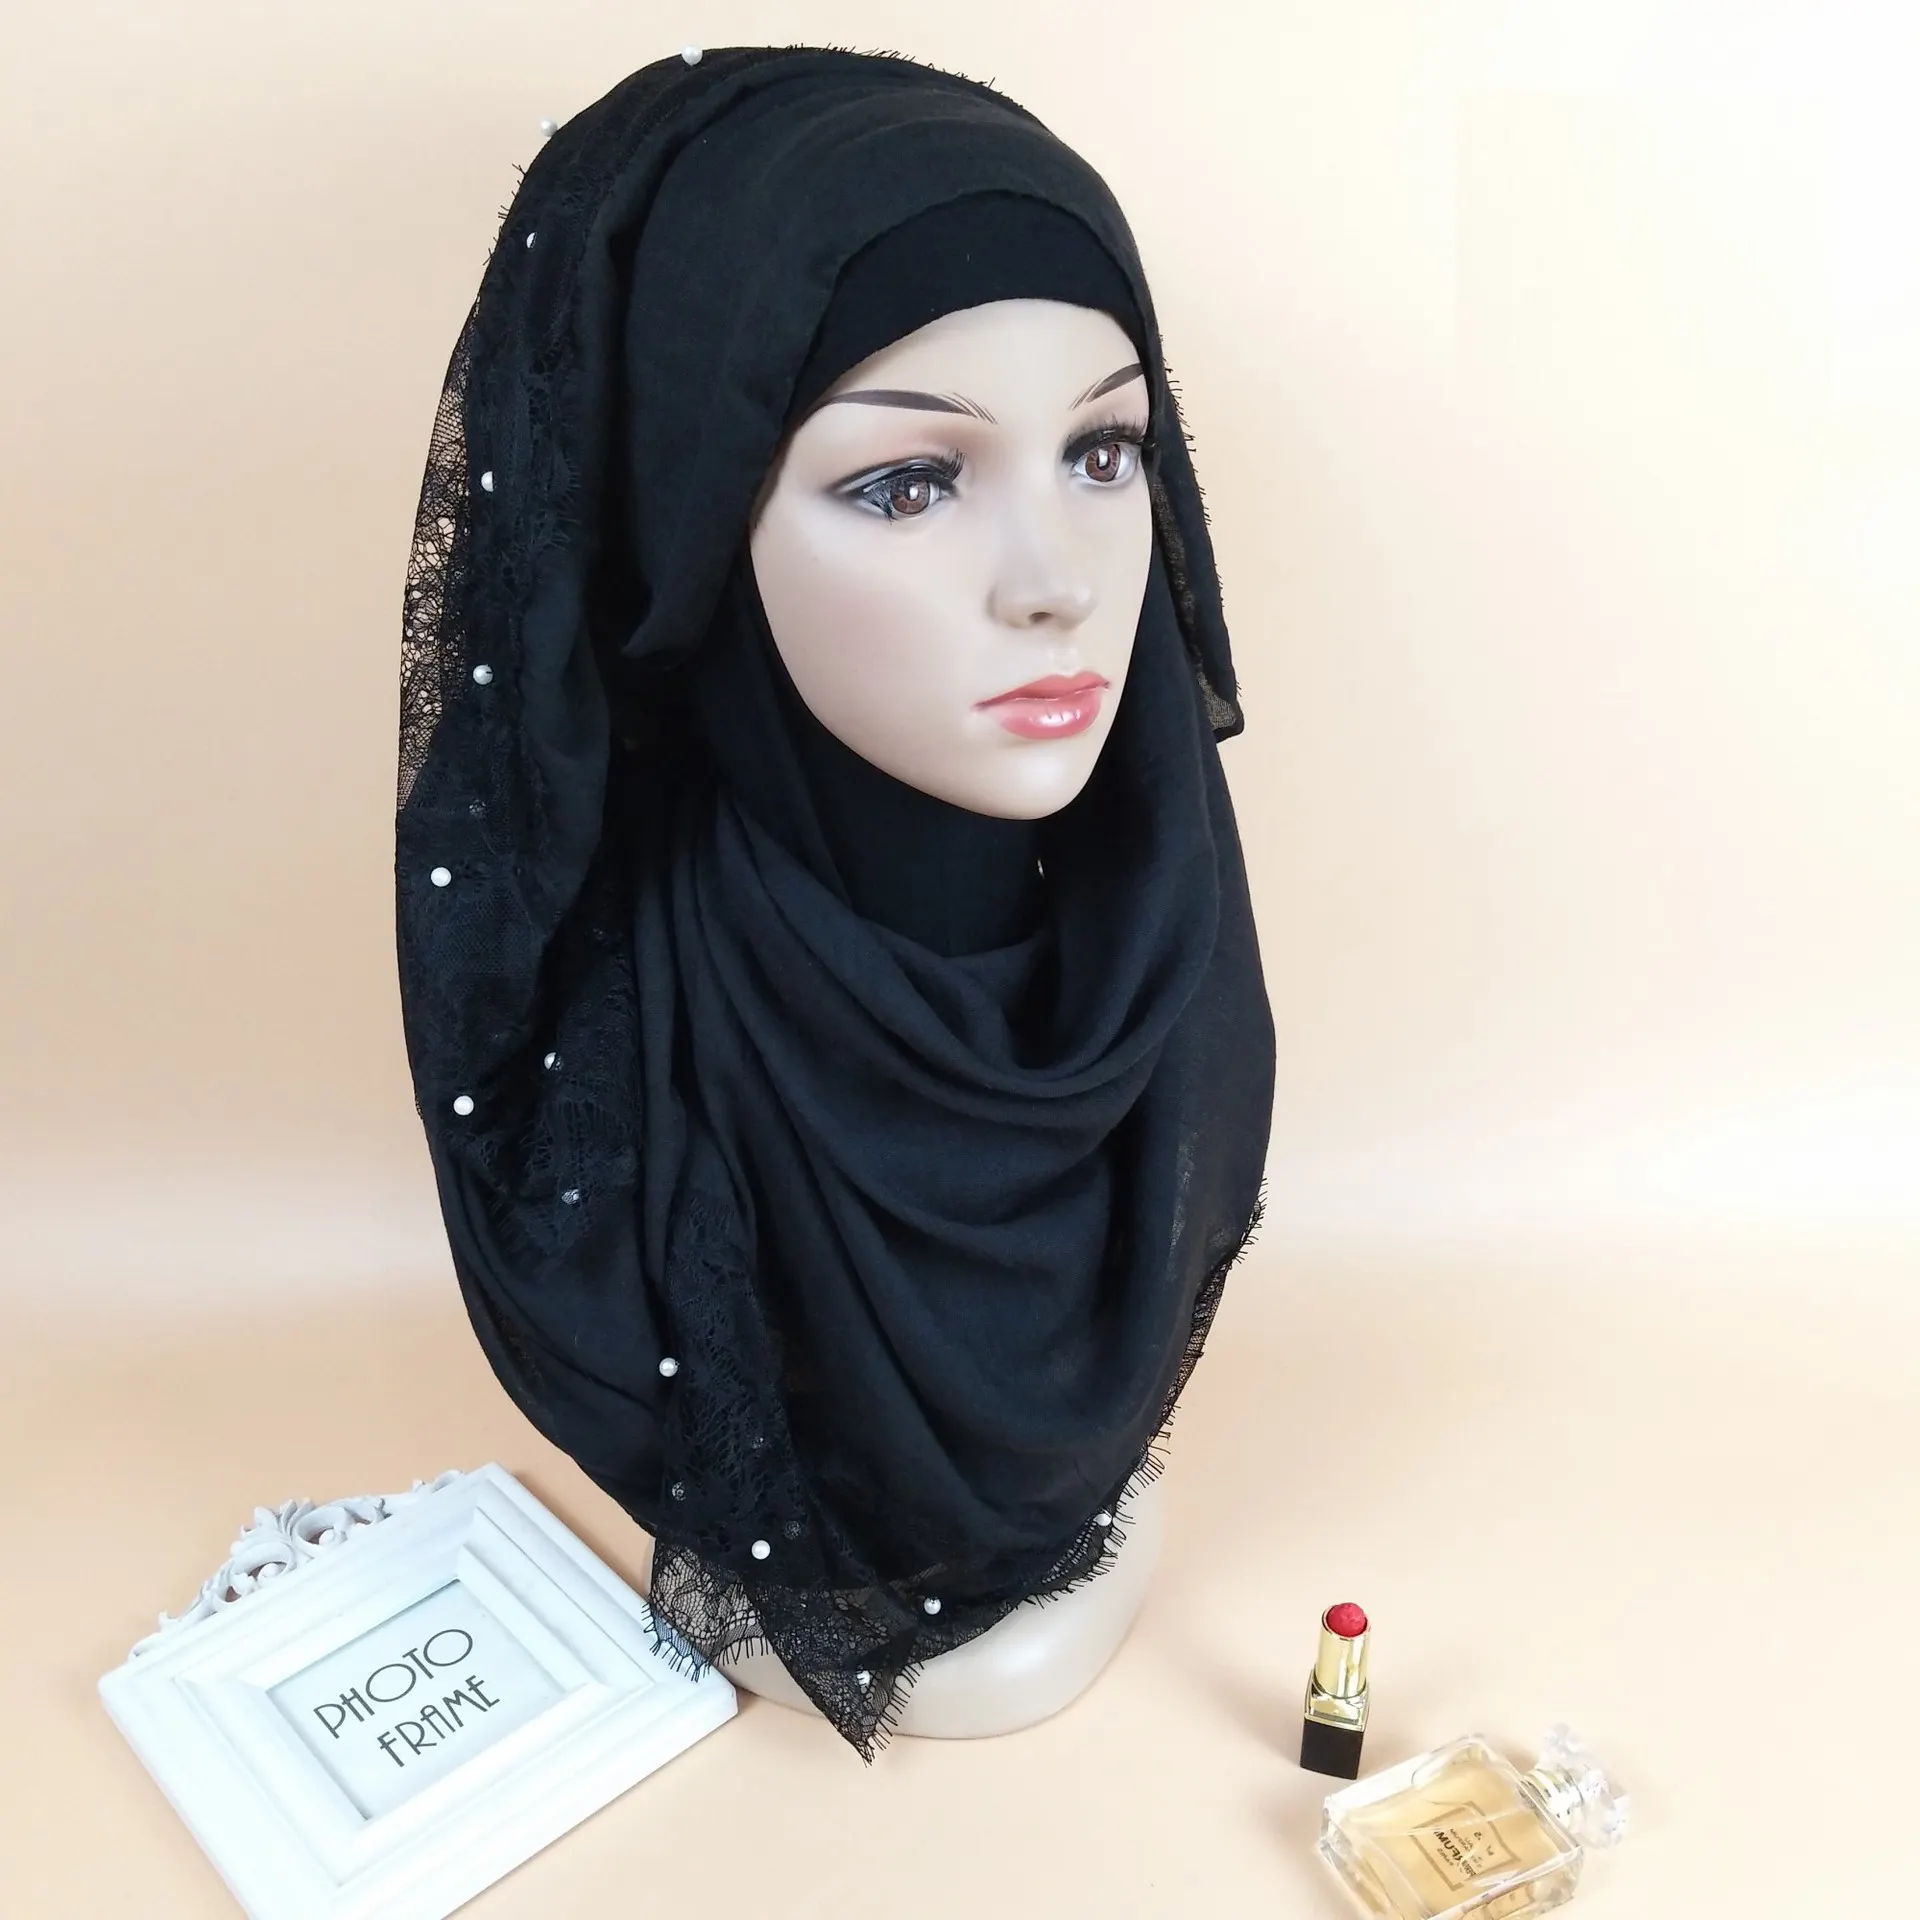 Faible QUANTITÉ MINIMALE DE COMMANDE stock mode hijab conçoit